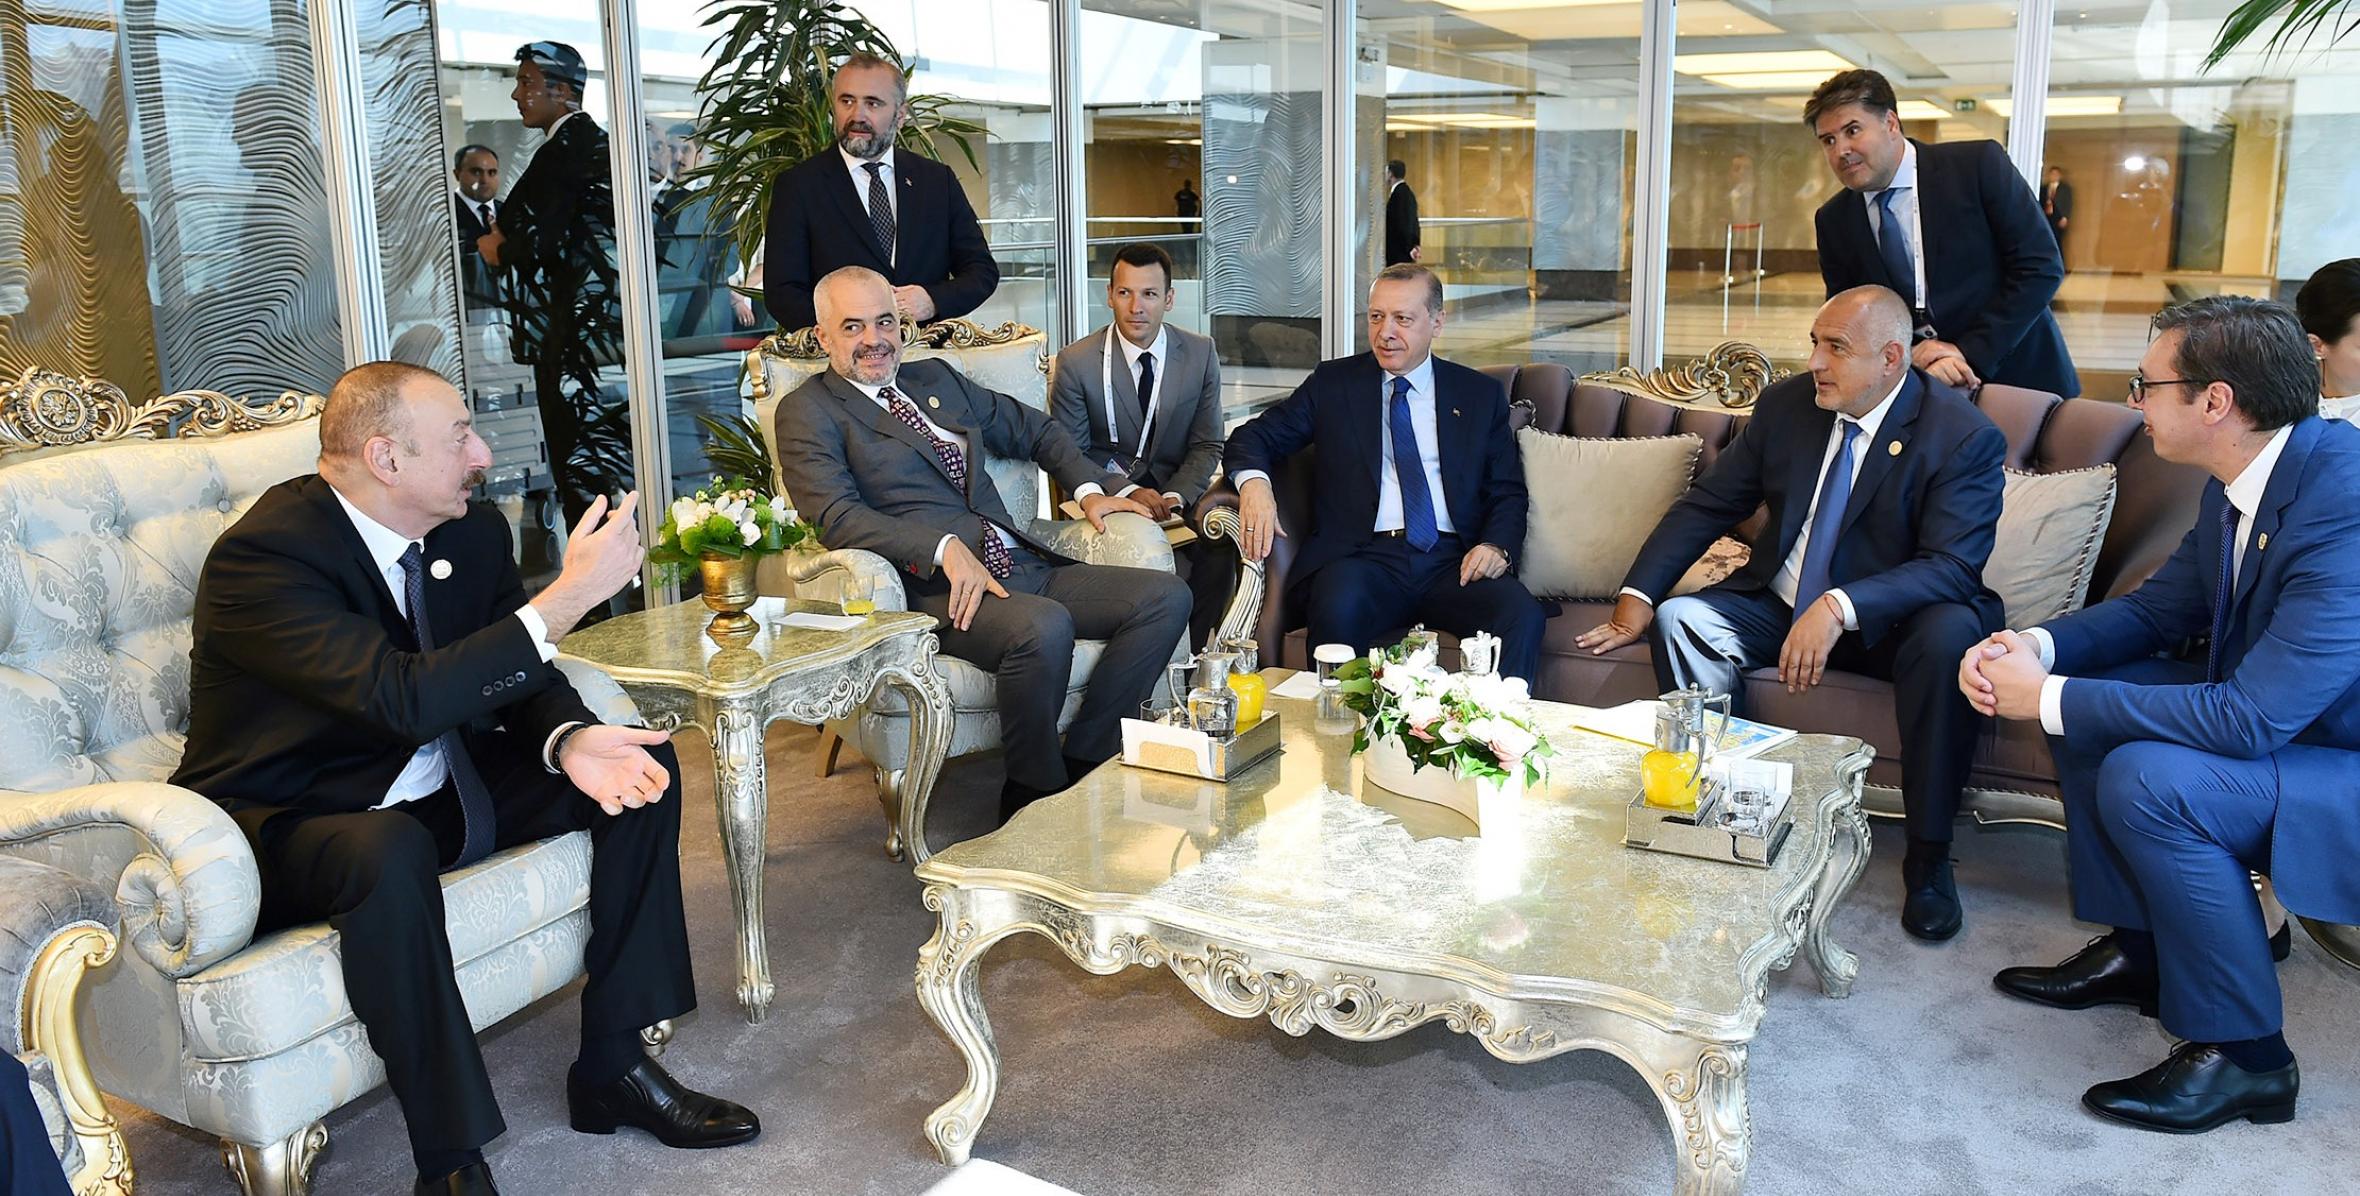 Состоялась краткая беседа между Ильхамом Алиевым, Президентом Реджепом Тайипом Эрдоганом, главами государств и правительств, принимающими участие в 22-м Всемирном нефтяном конгрессе